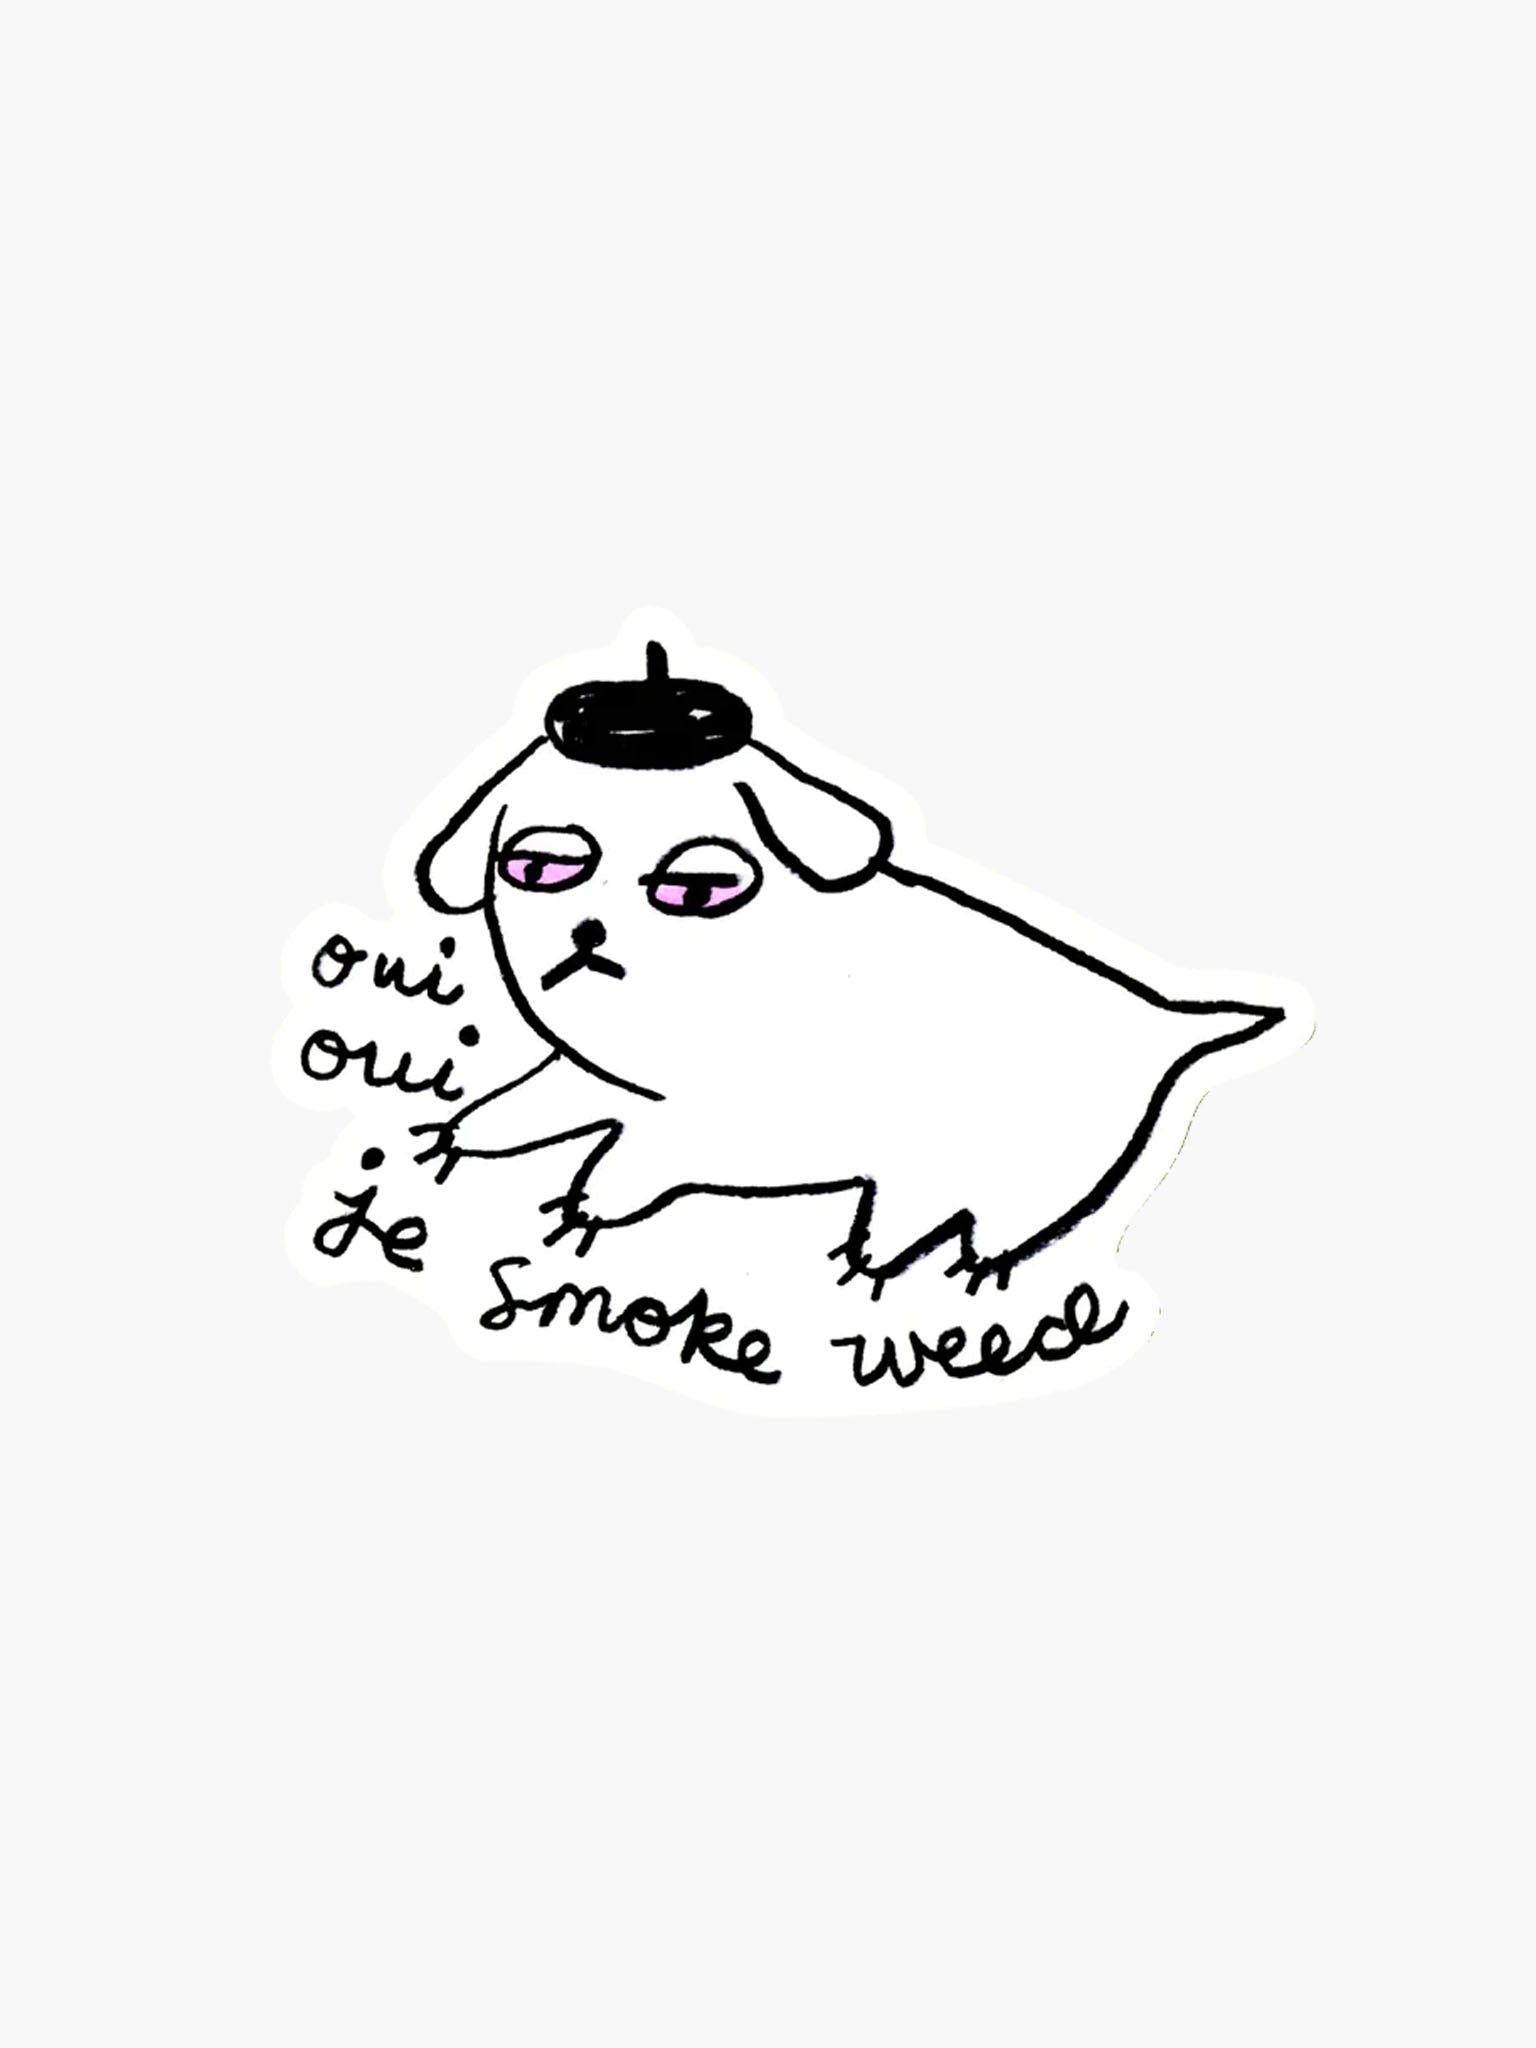 Weed Dog Sticker (Oui Oui Je Smoke Weed)